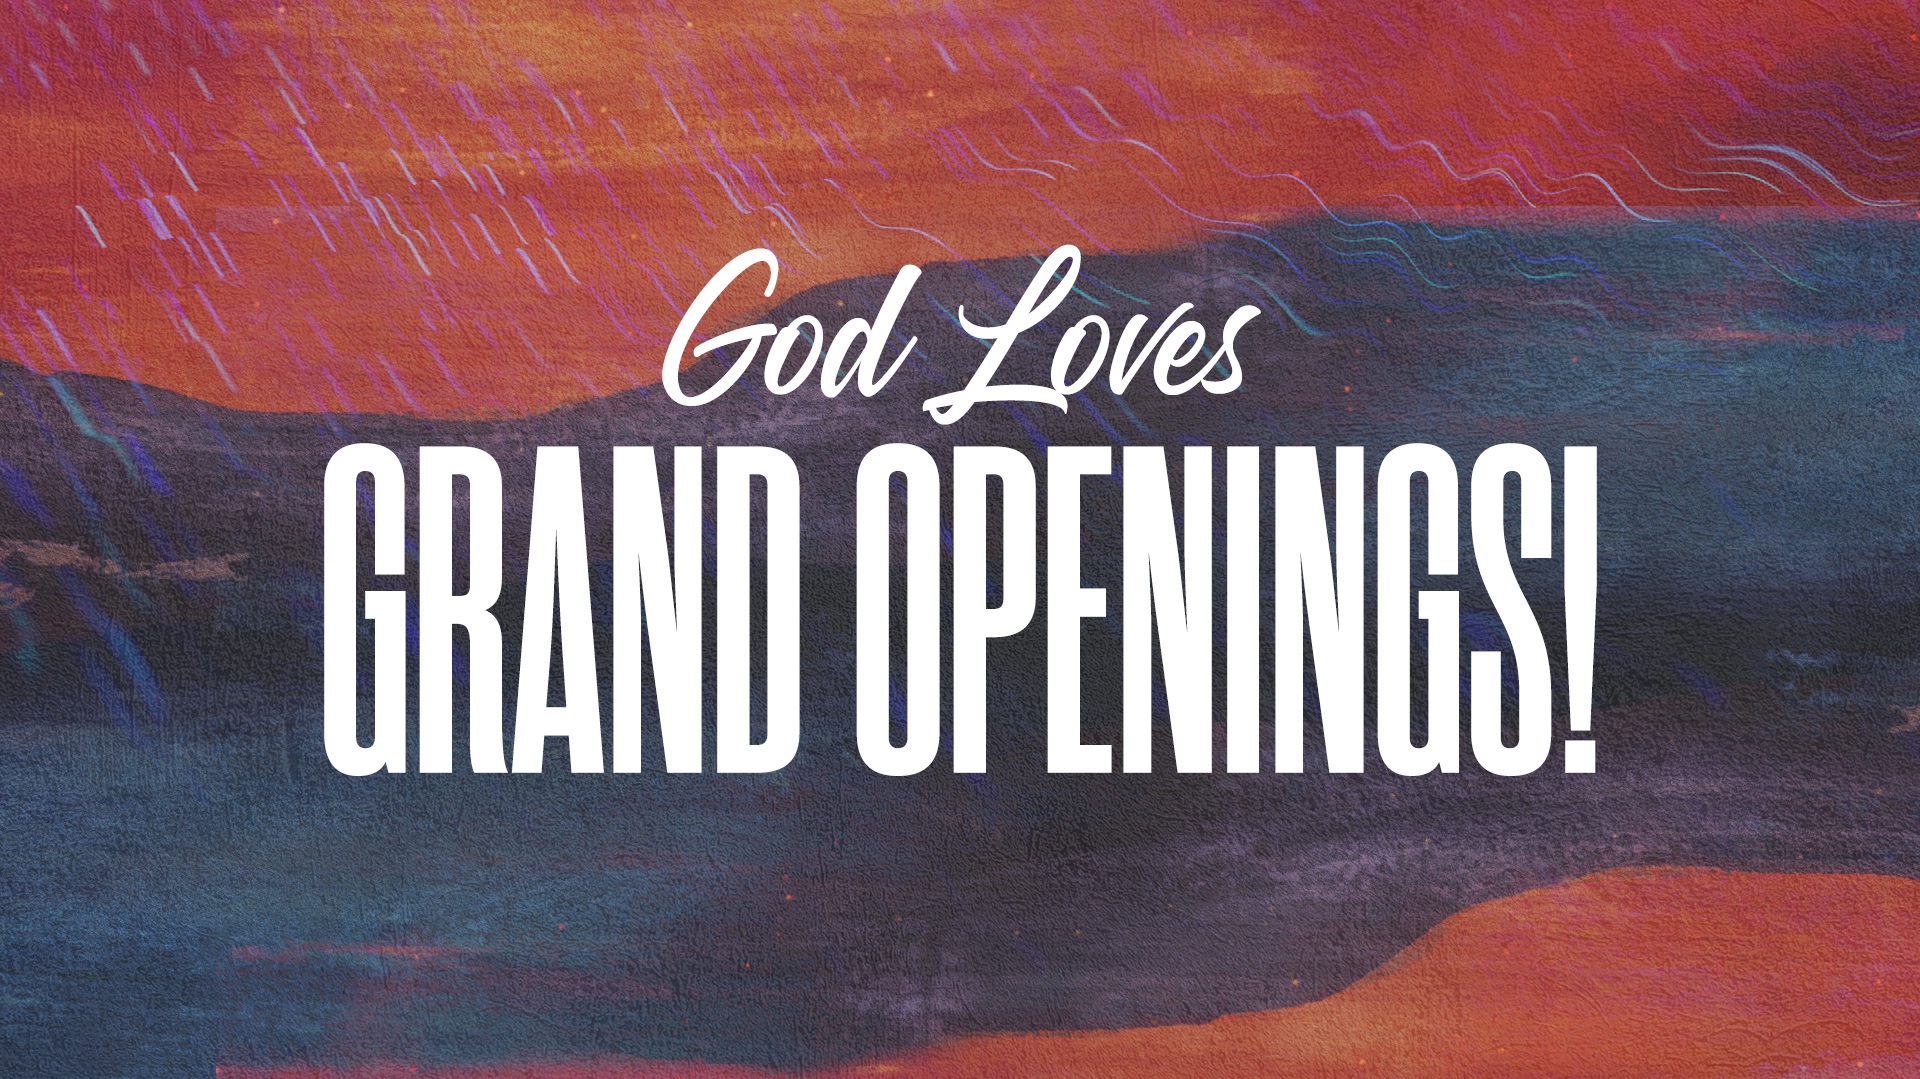 God Loves Grand Openings